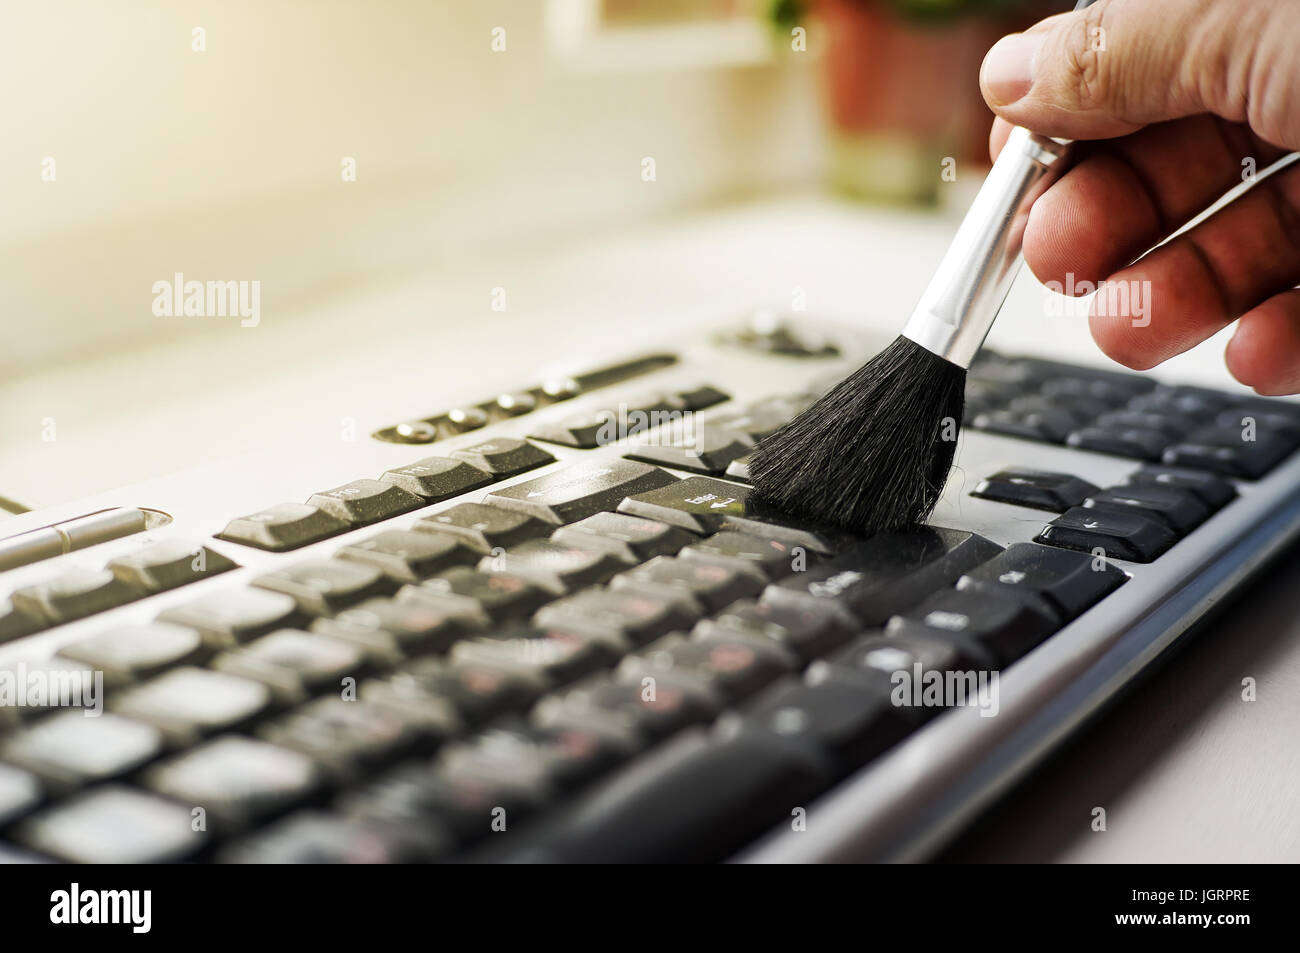 Tastatur von Staub durch schwarzen Pinsel reinigen. Reinigungskonzept.  Büroreinigung Stockfotografie - Alamy